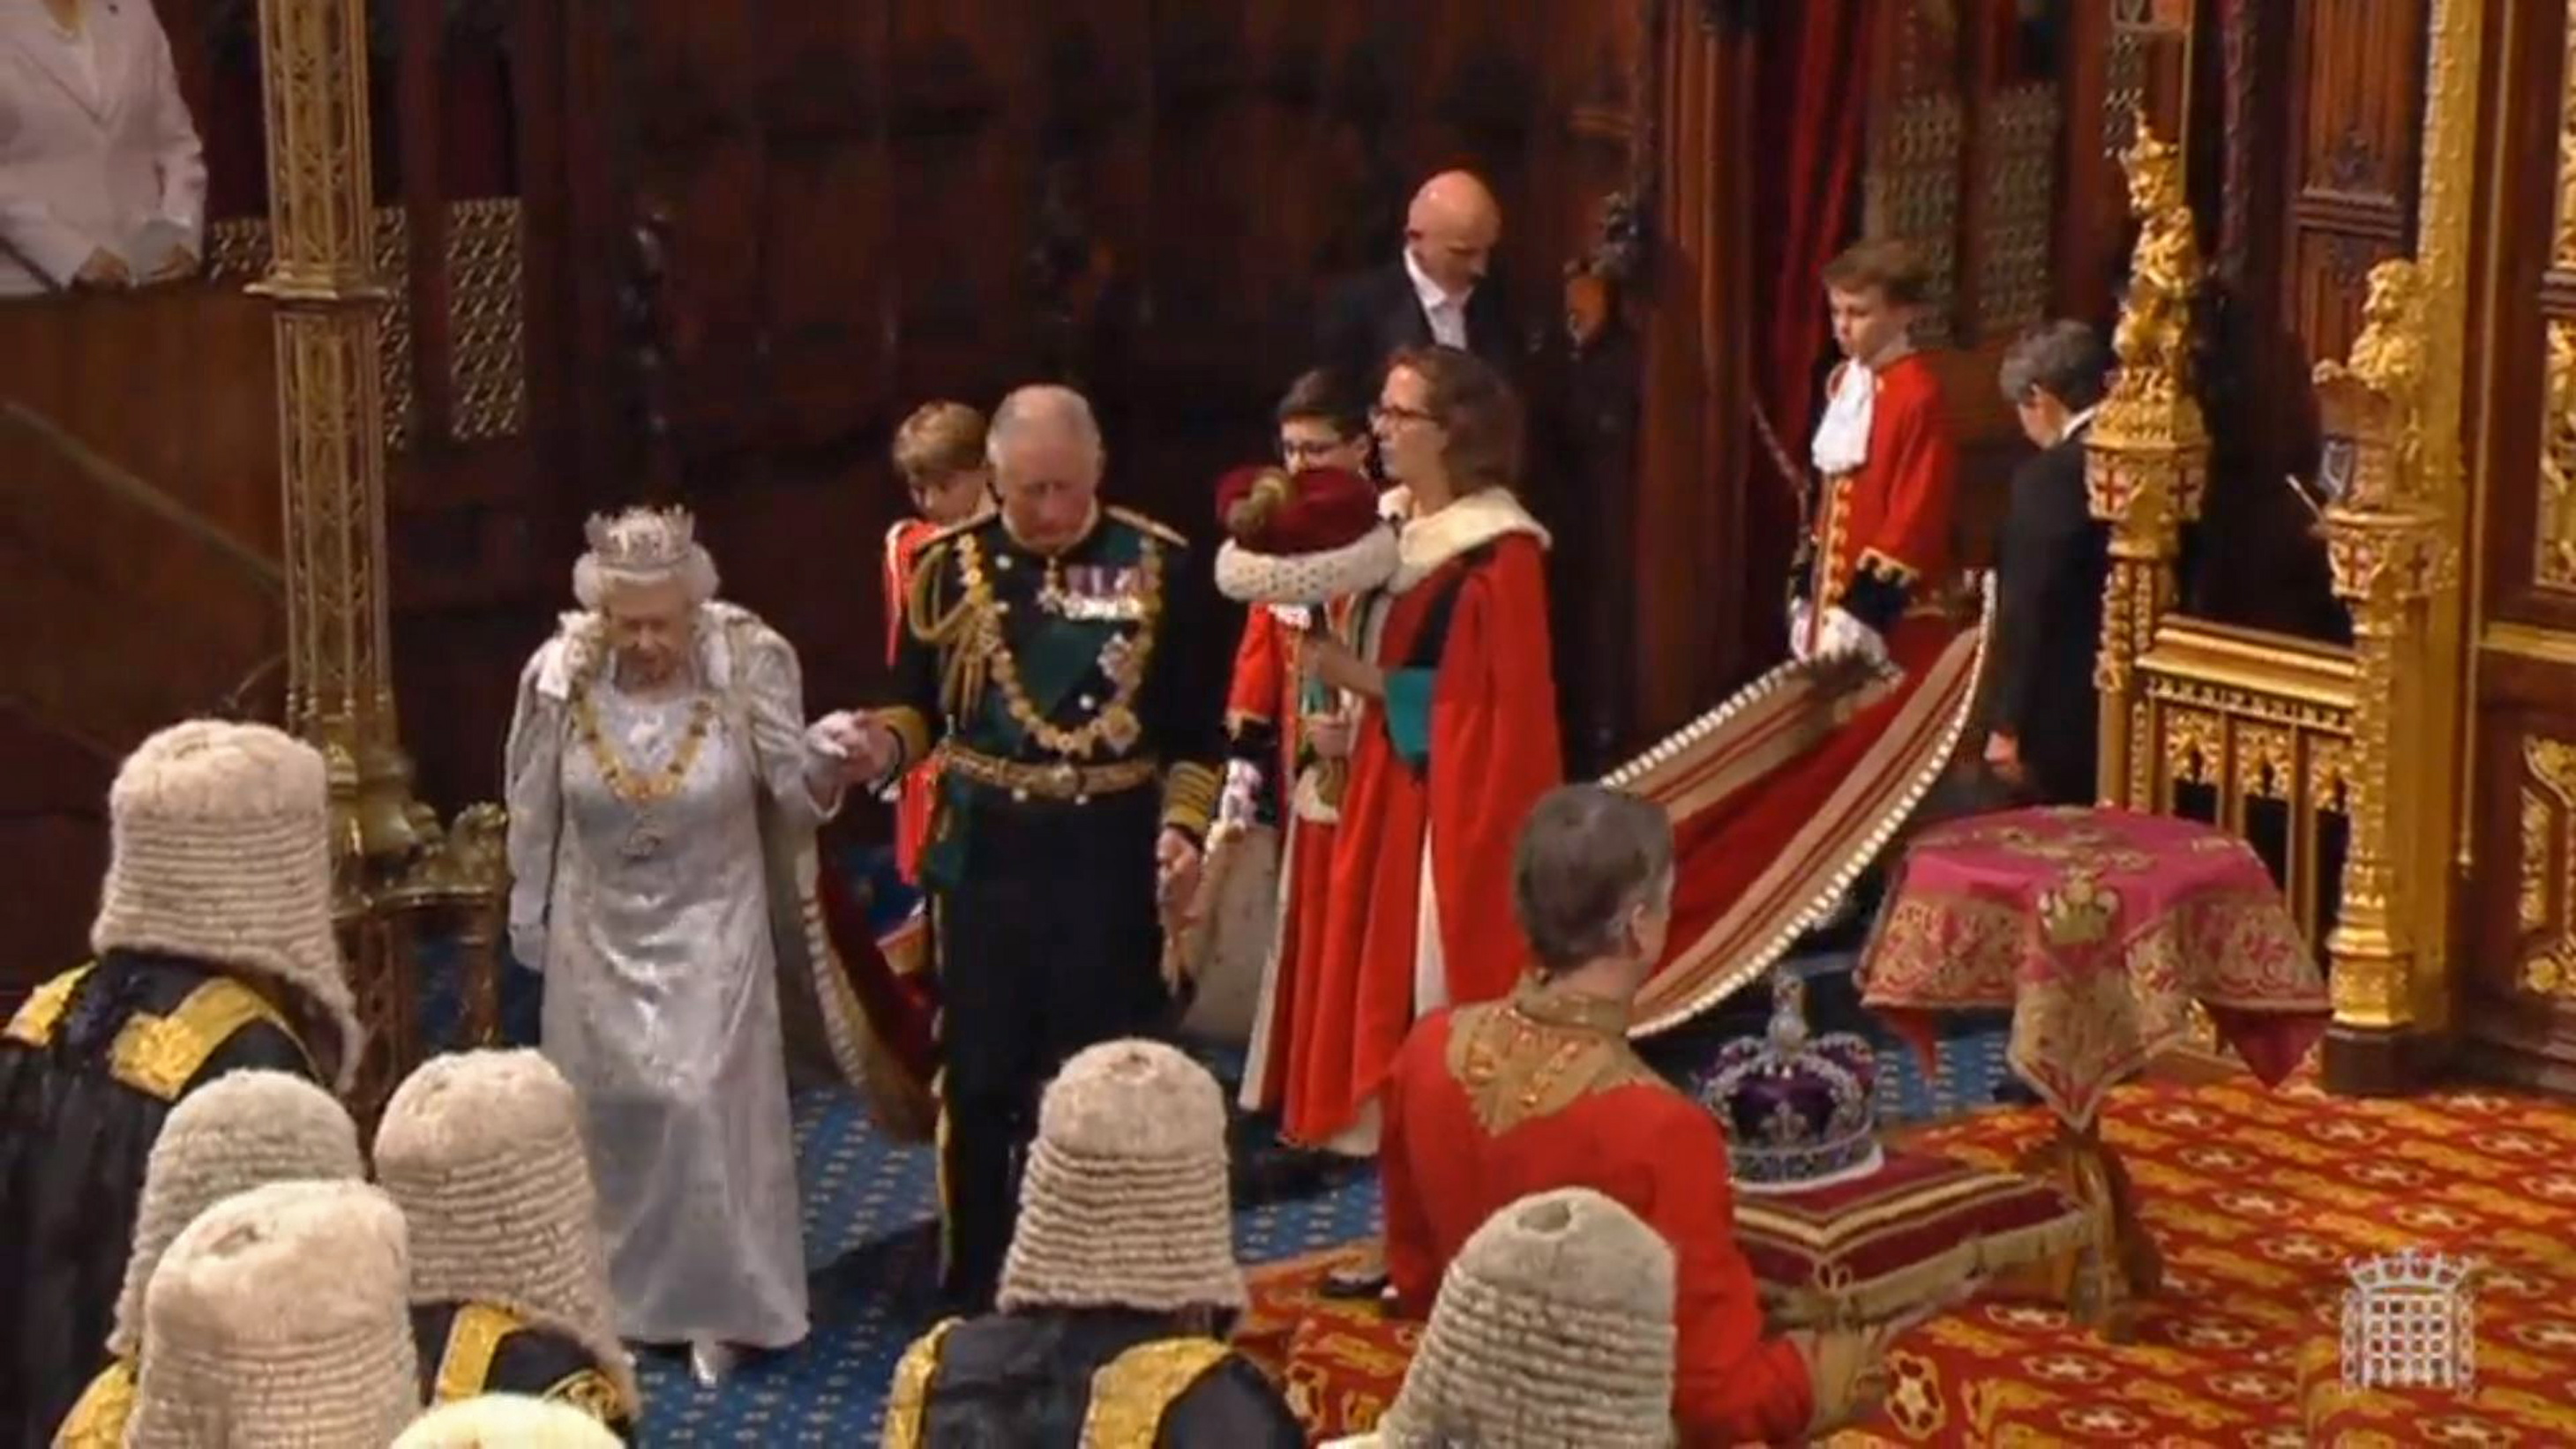 Речта на кралицата бележи първото подобно обръщение на монарх след 21 юни 2017 г. Тази година обръщението очертава законодателната програма на Великобритания за предстоящата година.Речта се произнася традиционно в Камарата на лордовете.